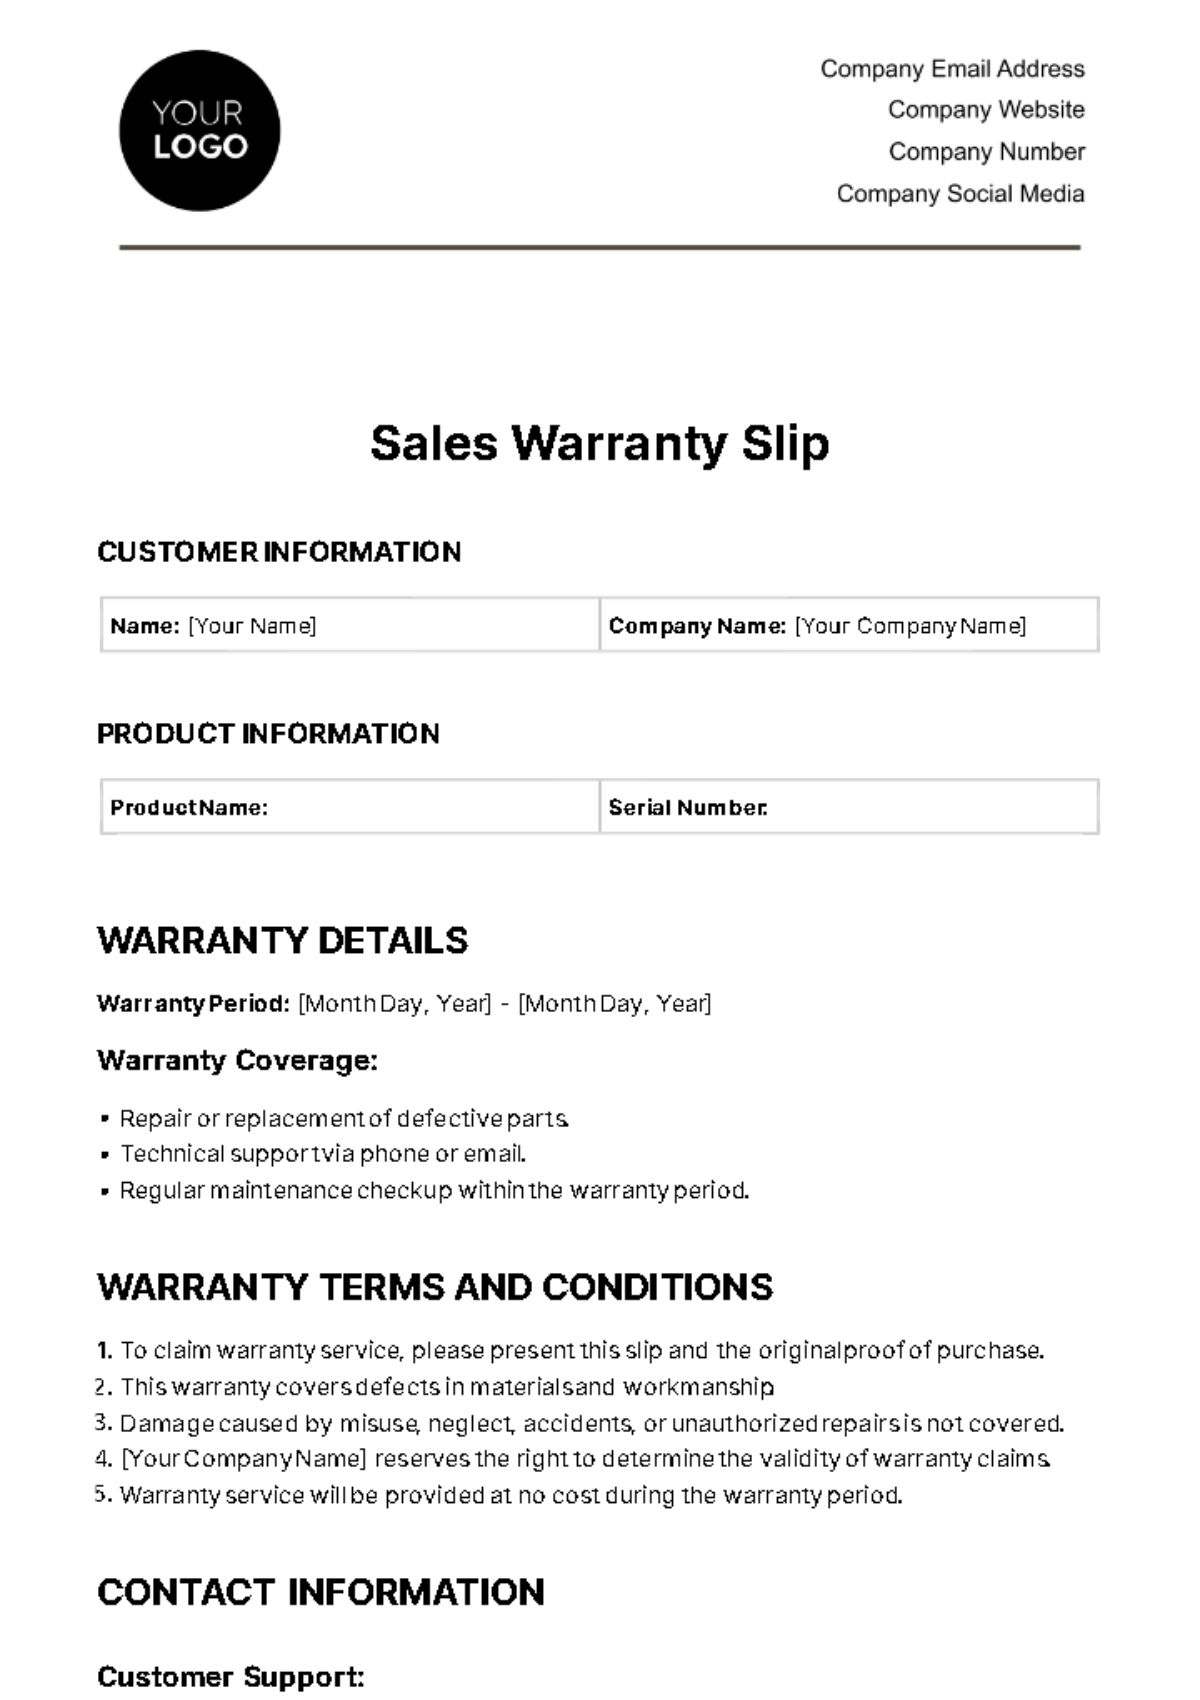 Sales Warranty Slip Template